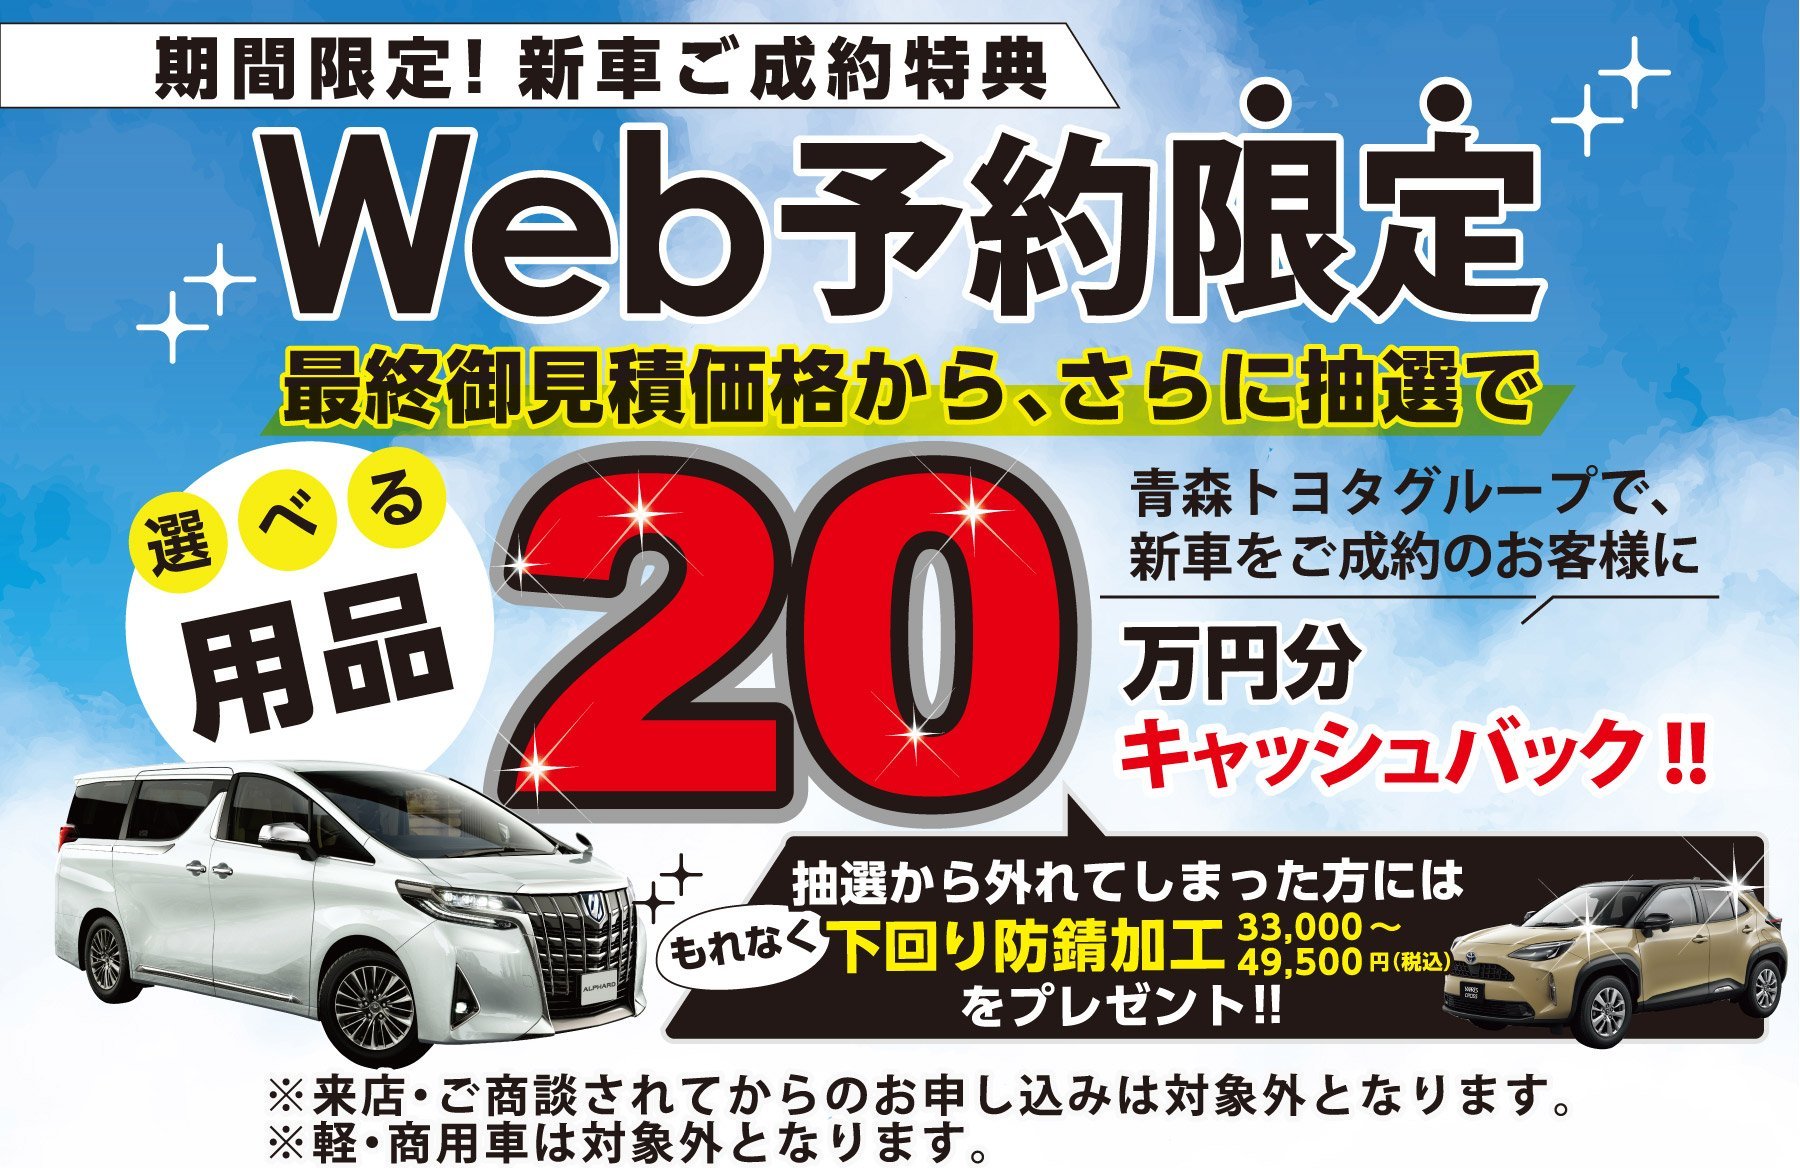 青森トヨタグループで、新車をご成約のお客様に選べる用品20万円分キャッシュバック